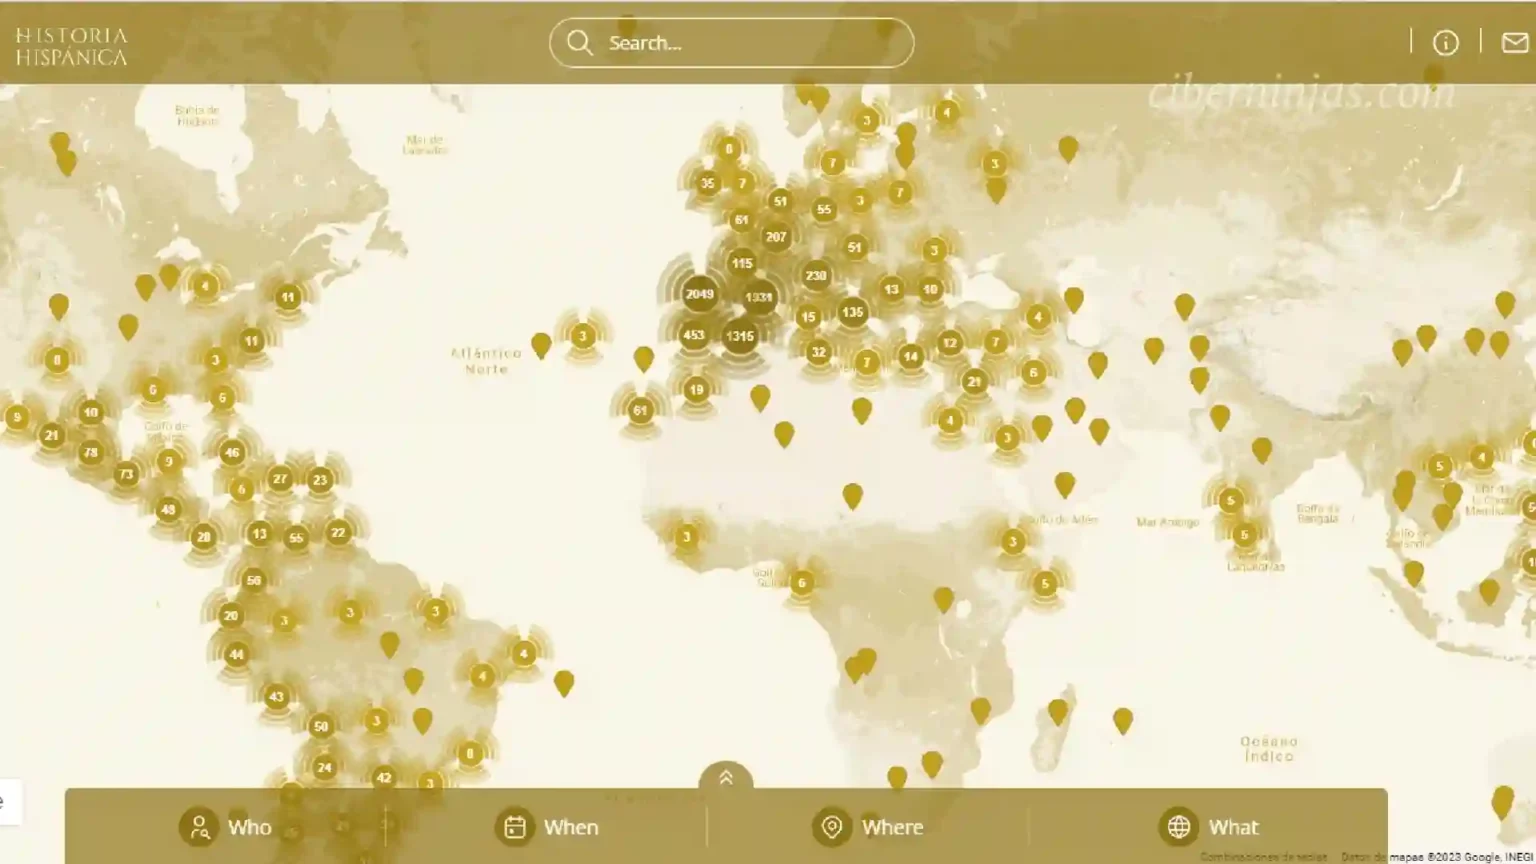 Crean Mapa Interactivo de la Historia de España